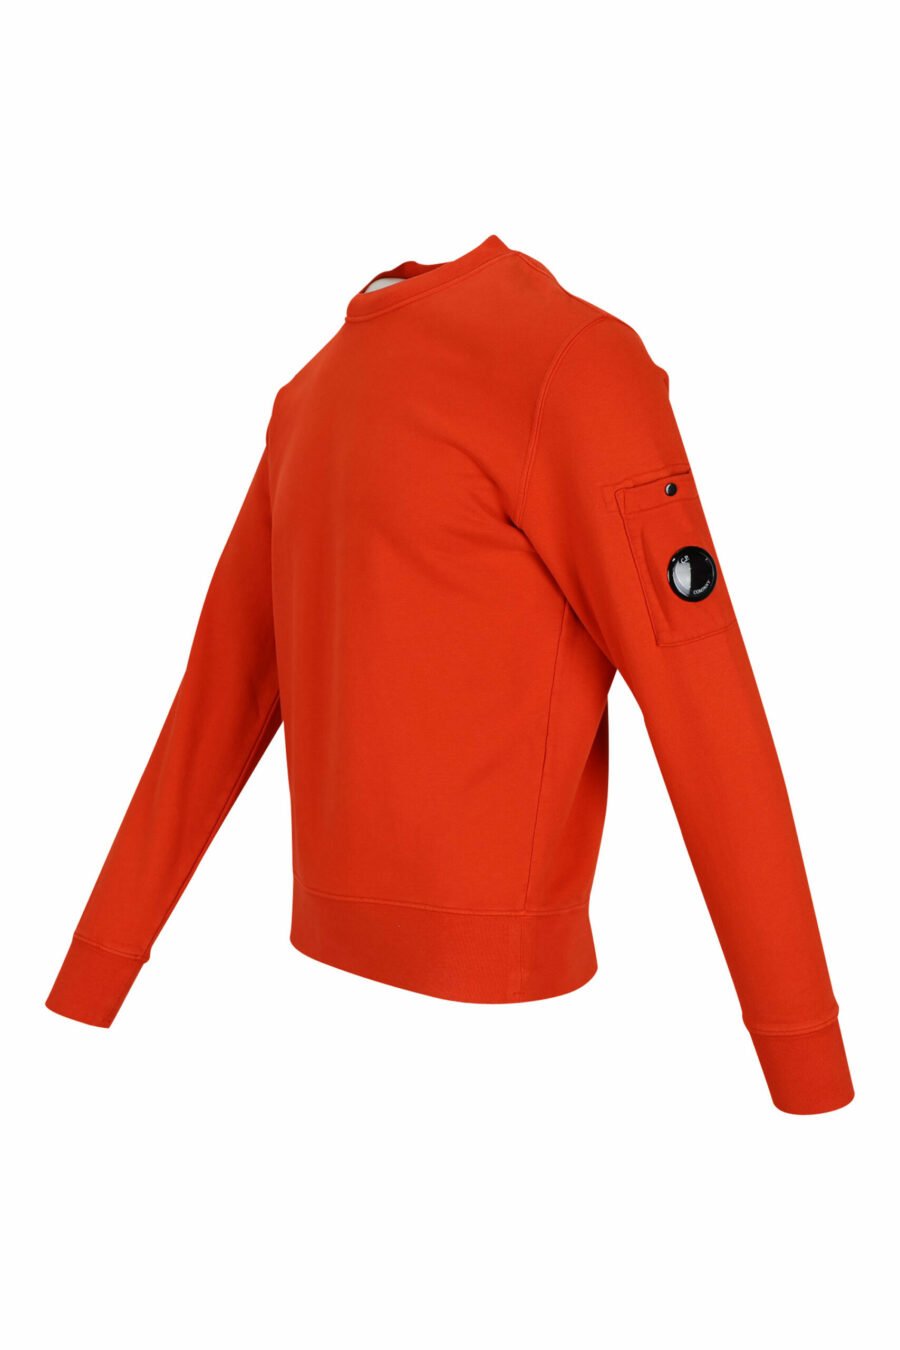 Orangefarbenes Sweatshirt mit seitlichem Linsenlogo - 7620943598254 1 skaliert